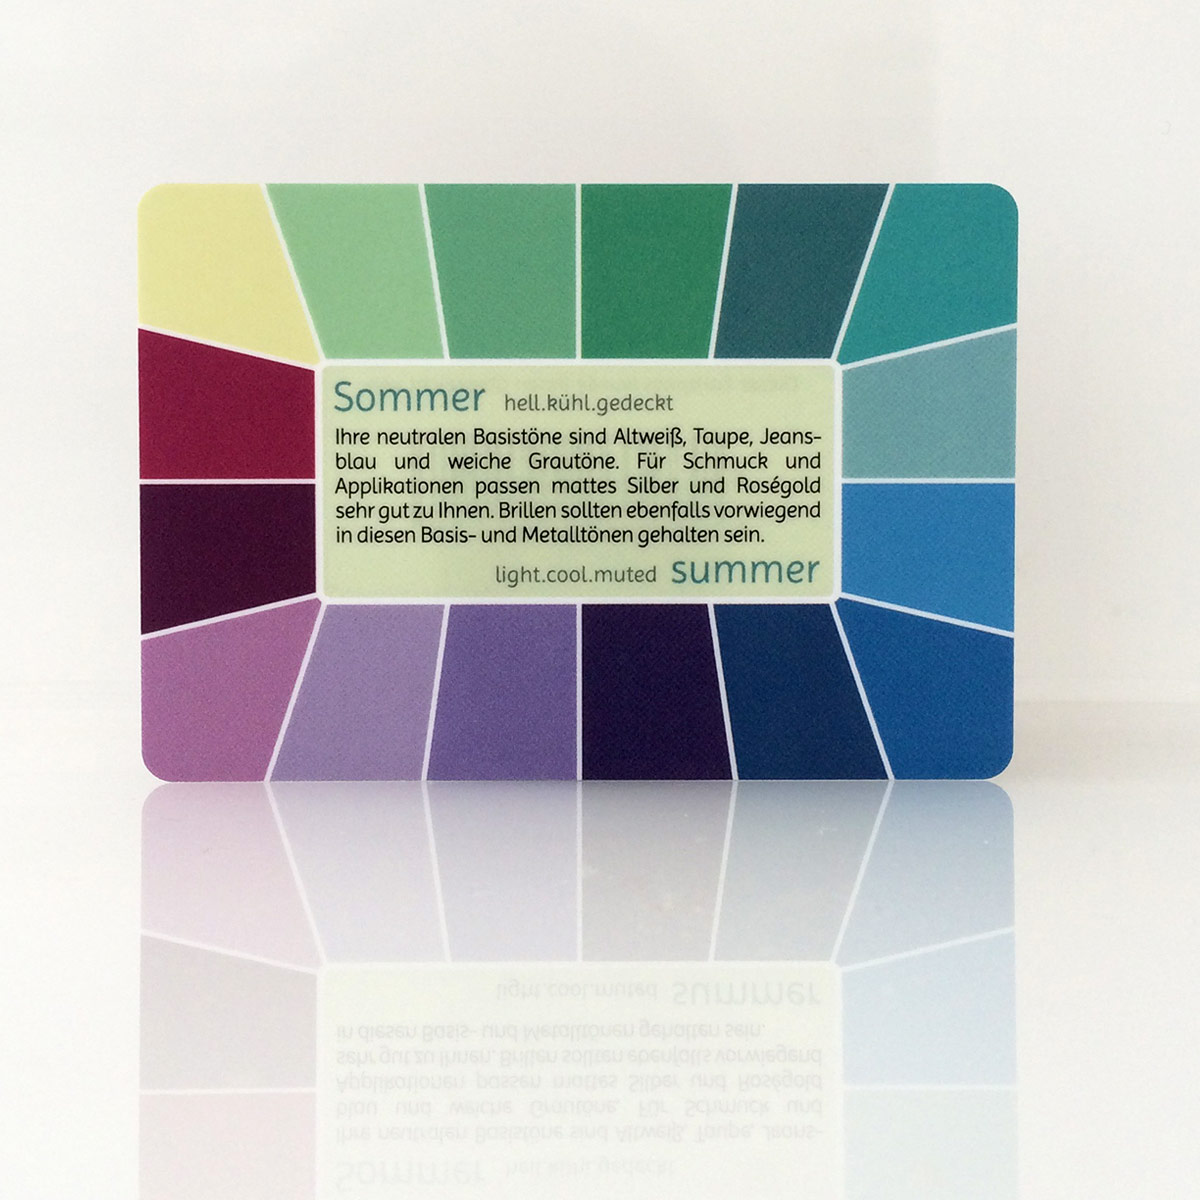 Farbpass Sommertyp zur Farbberatung, Vorderseite - Memo | Komood